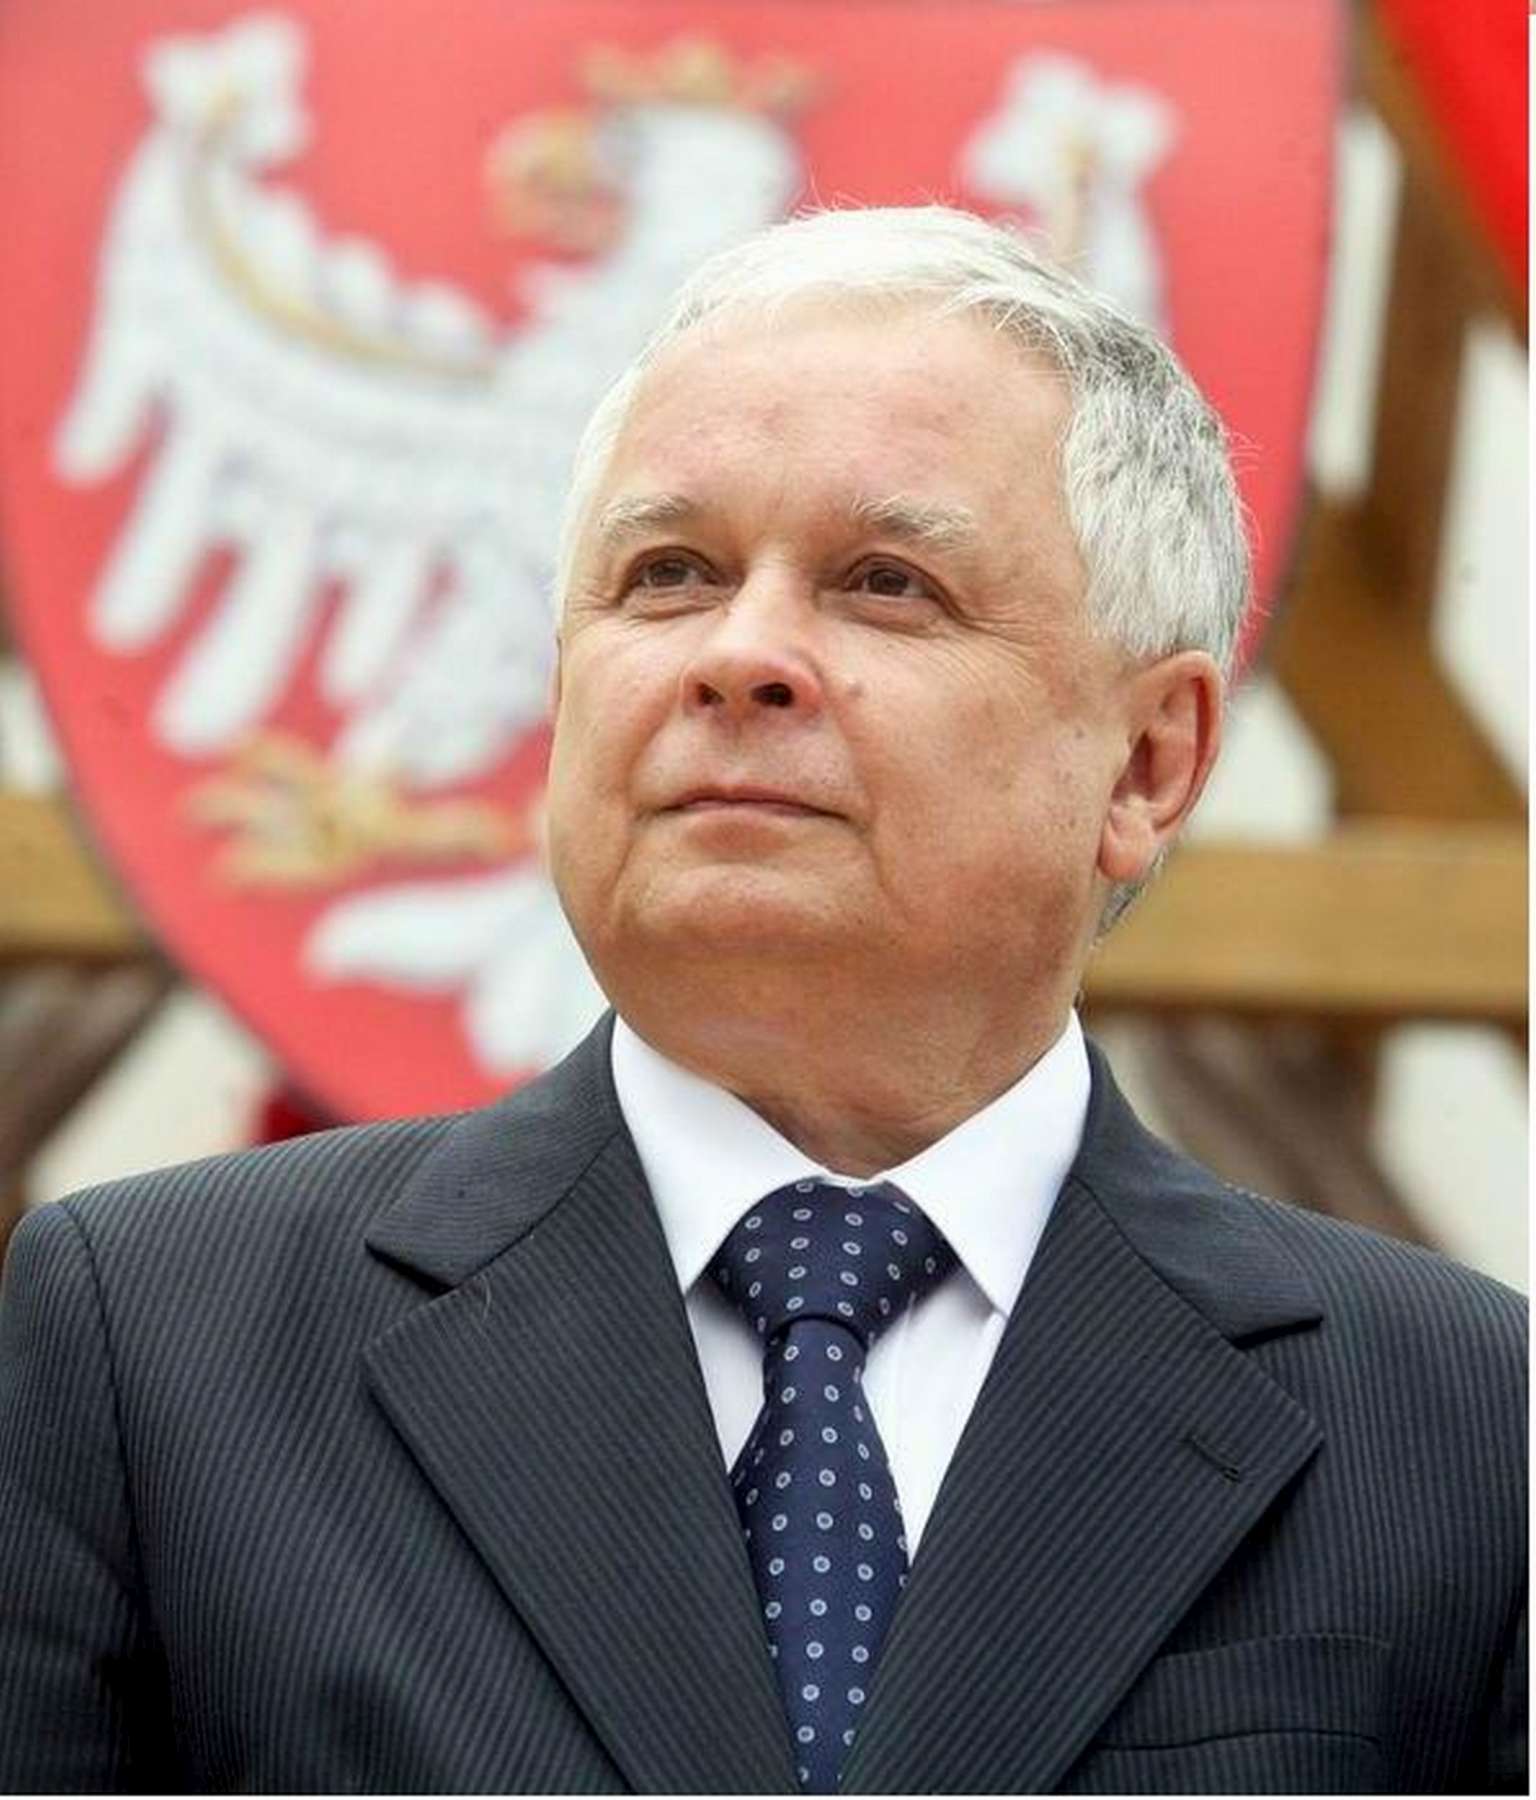 November 14-én exhumálják a szmolenszki légi katasztrófában elhunyt Lech Kaczynski elnököt és feleségét